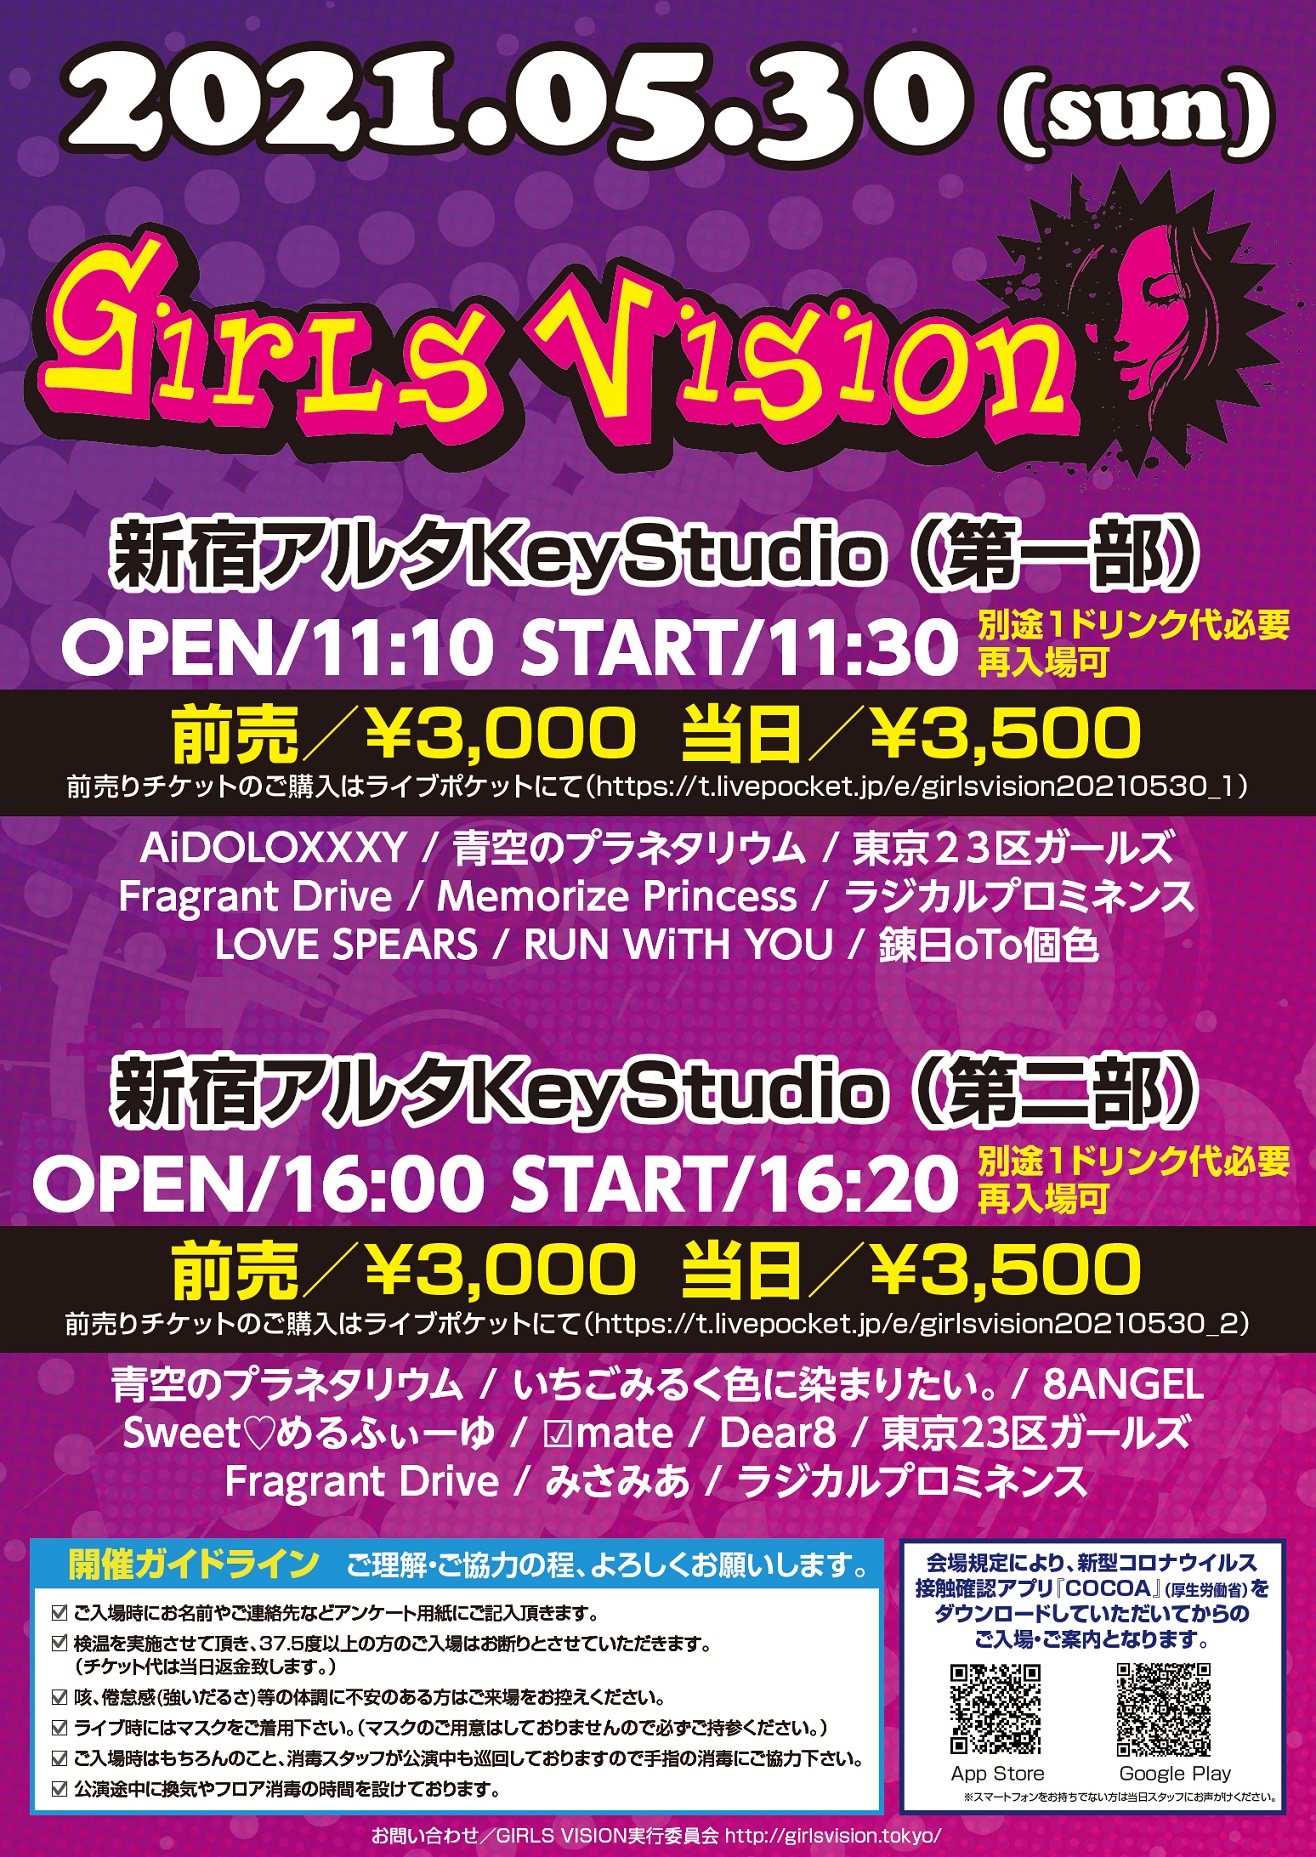 Girls Vision 新宿アルタkeystudio 二部制 Keystudio ライブエンタテイメントシアター